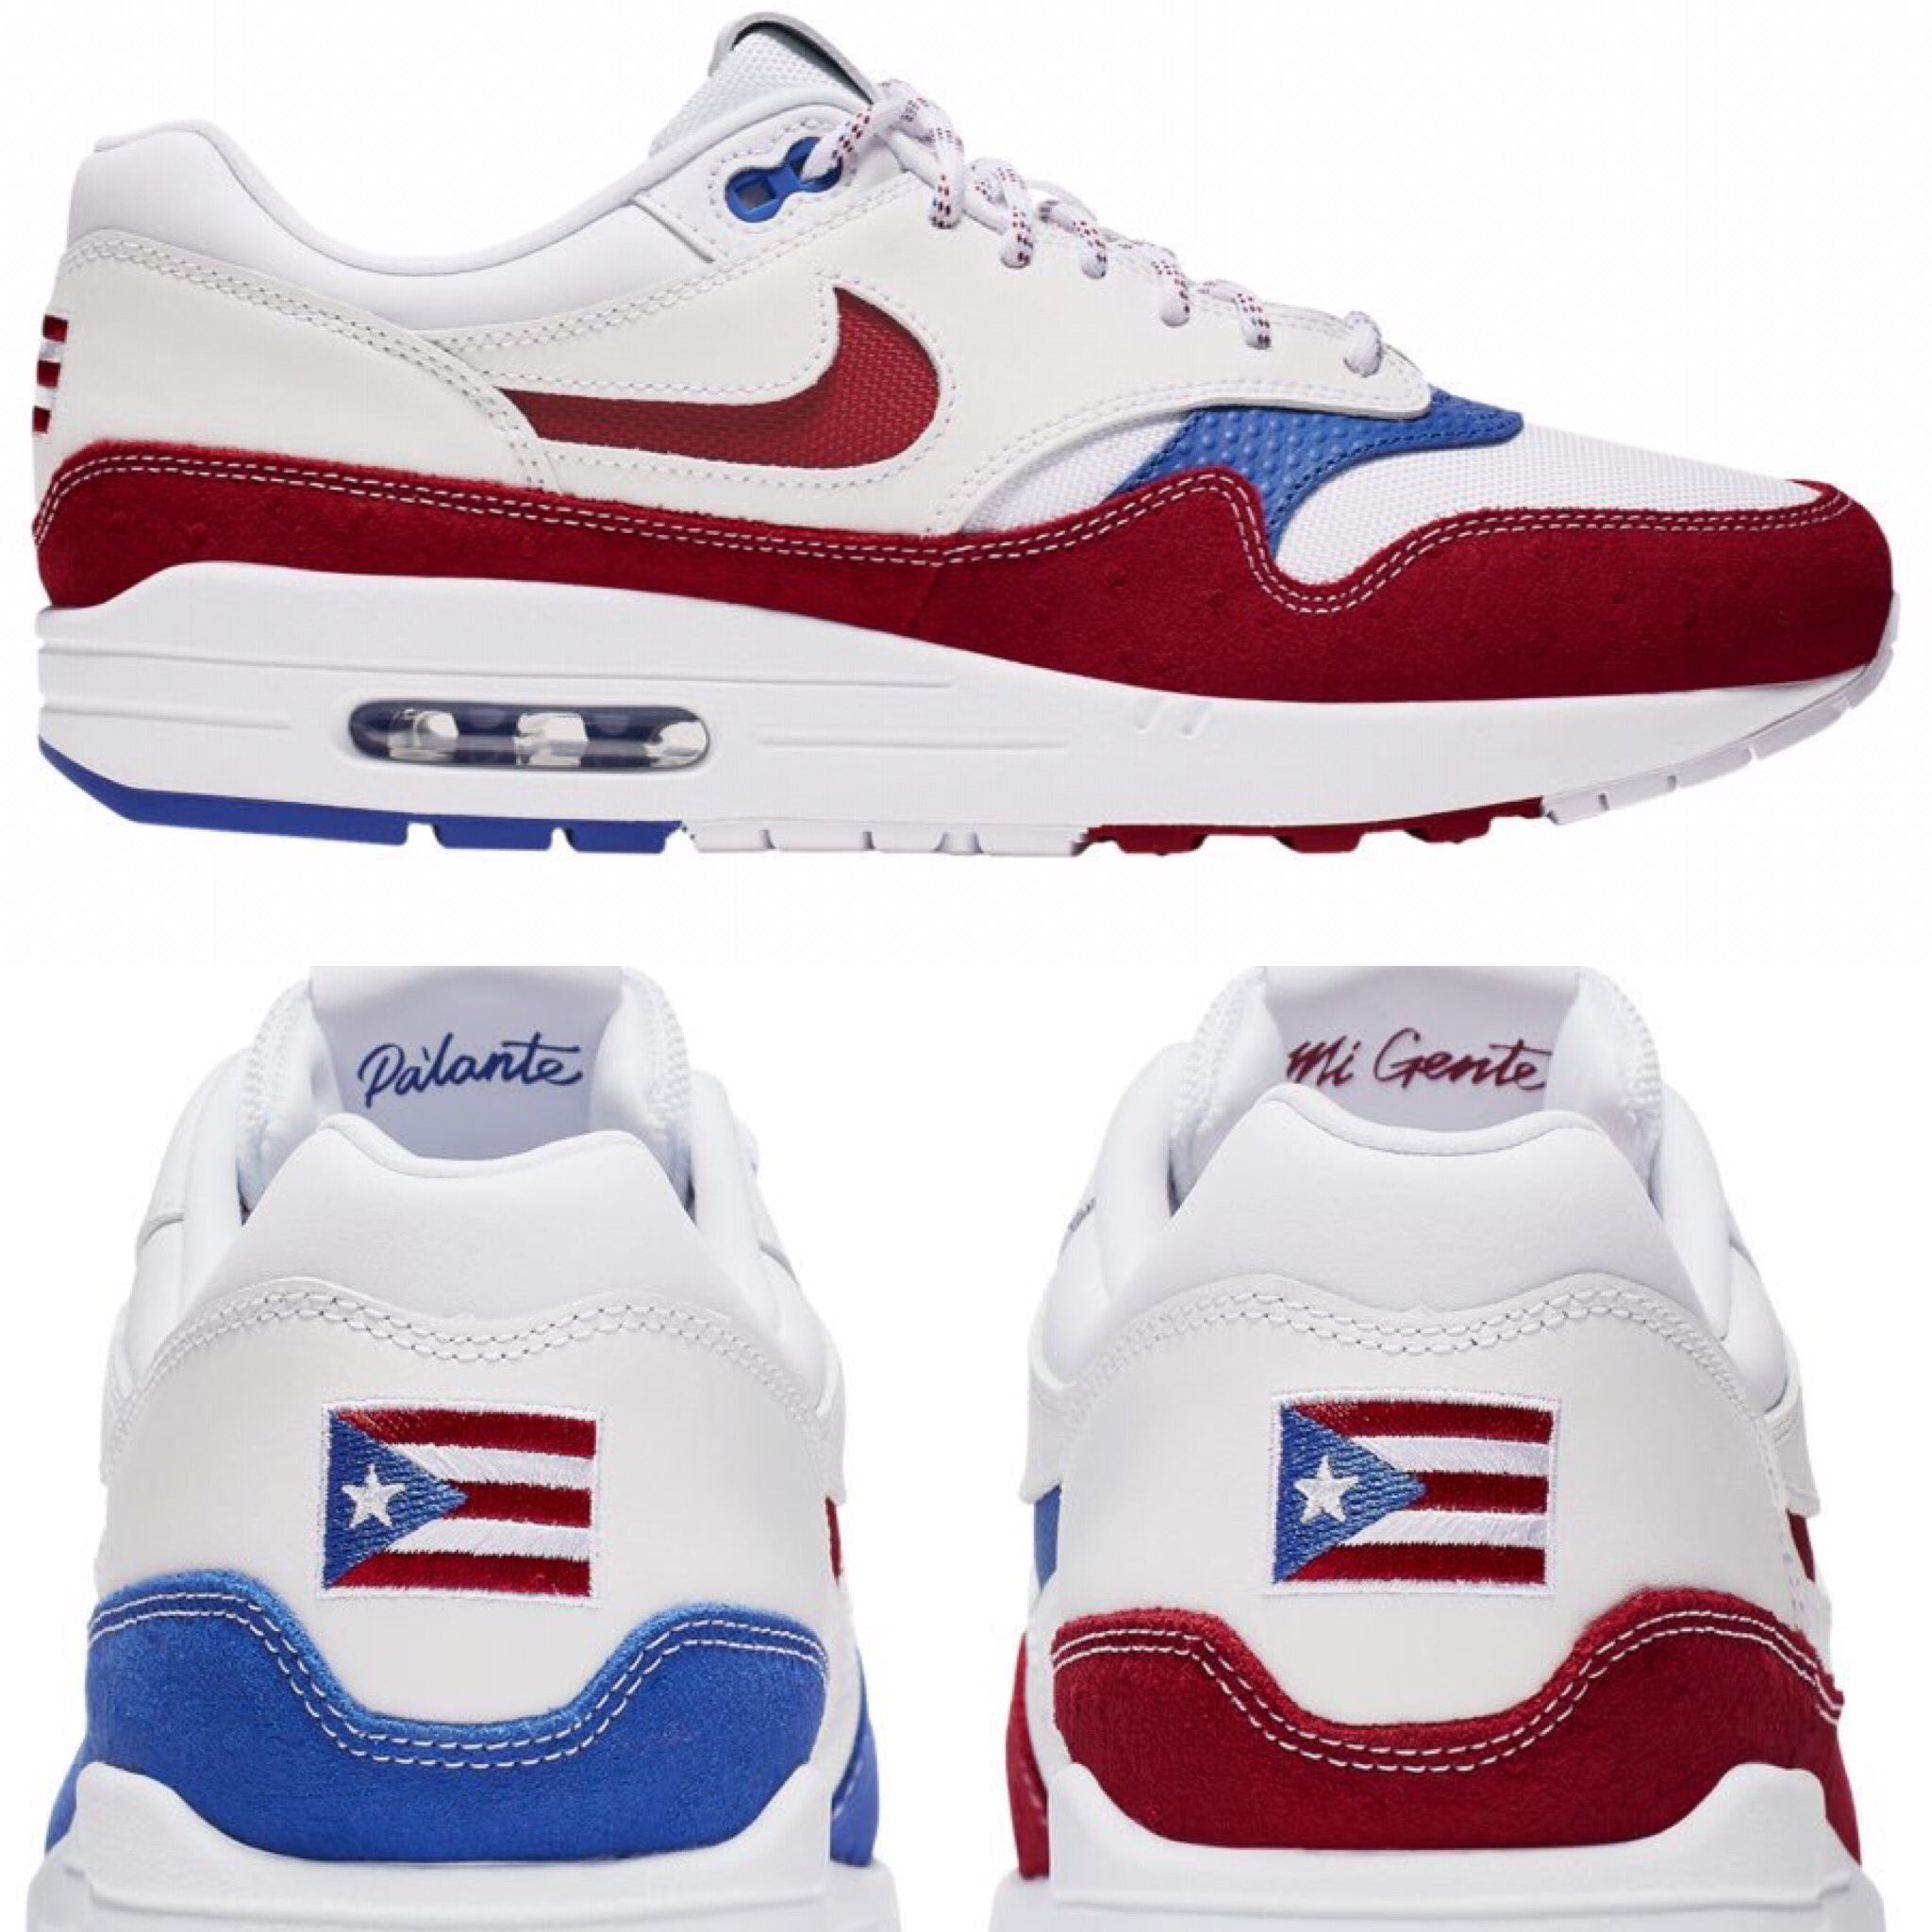 Maratonespr.com on Twitter: "Compañía Nike lanza unos tenis con la bandera de Puerto Rico. Los también llevan mensaje impreso que lee “Pa'lante mi El de tenis son los